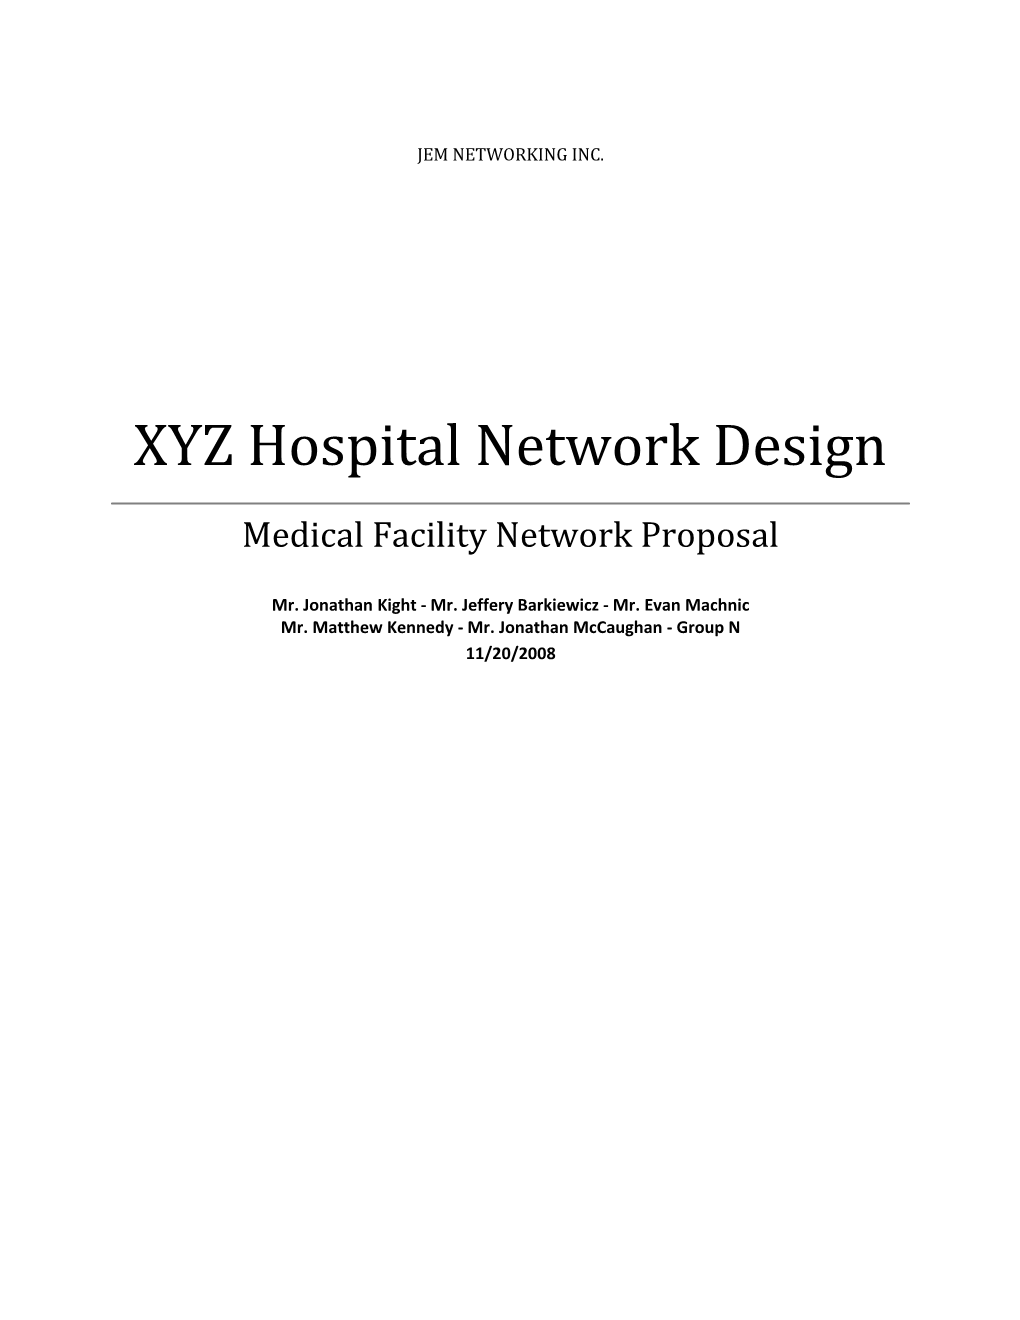 XYZ Hospital Network Design